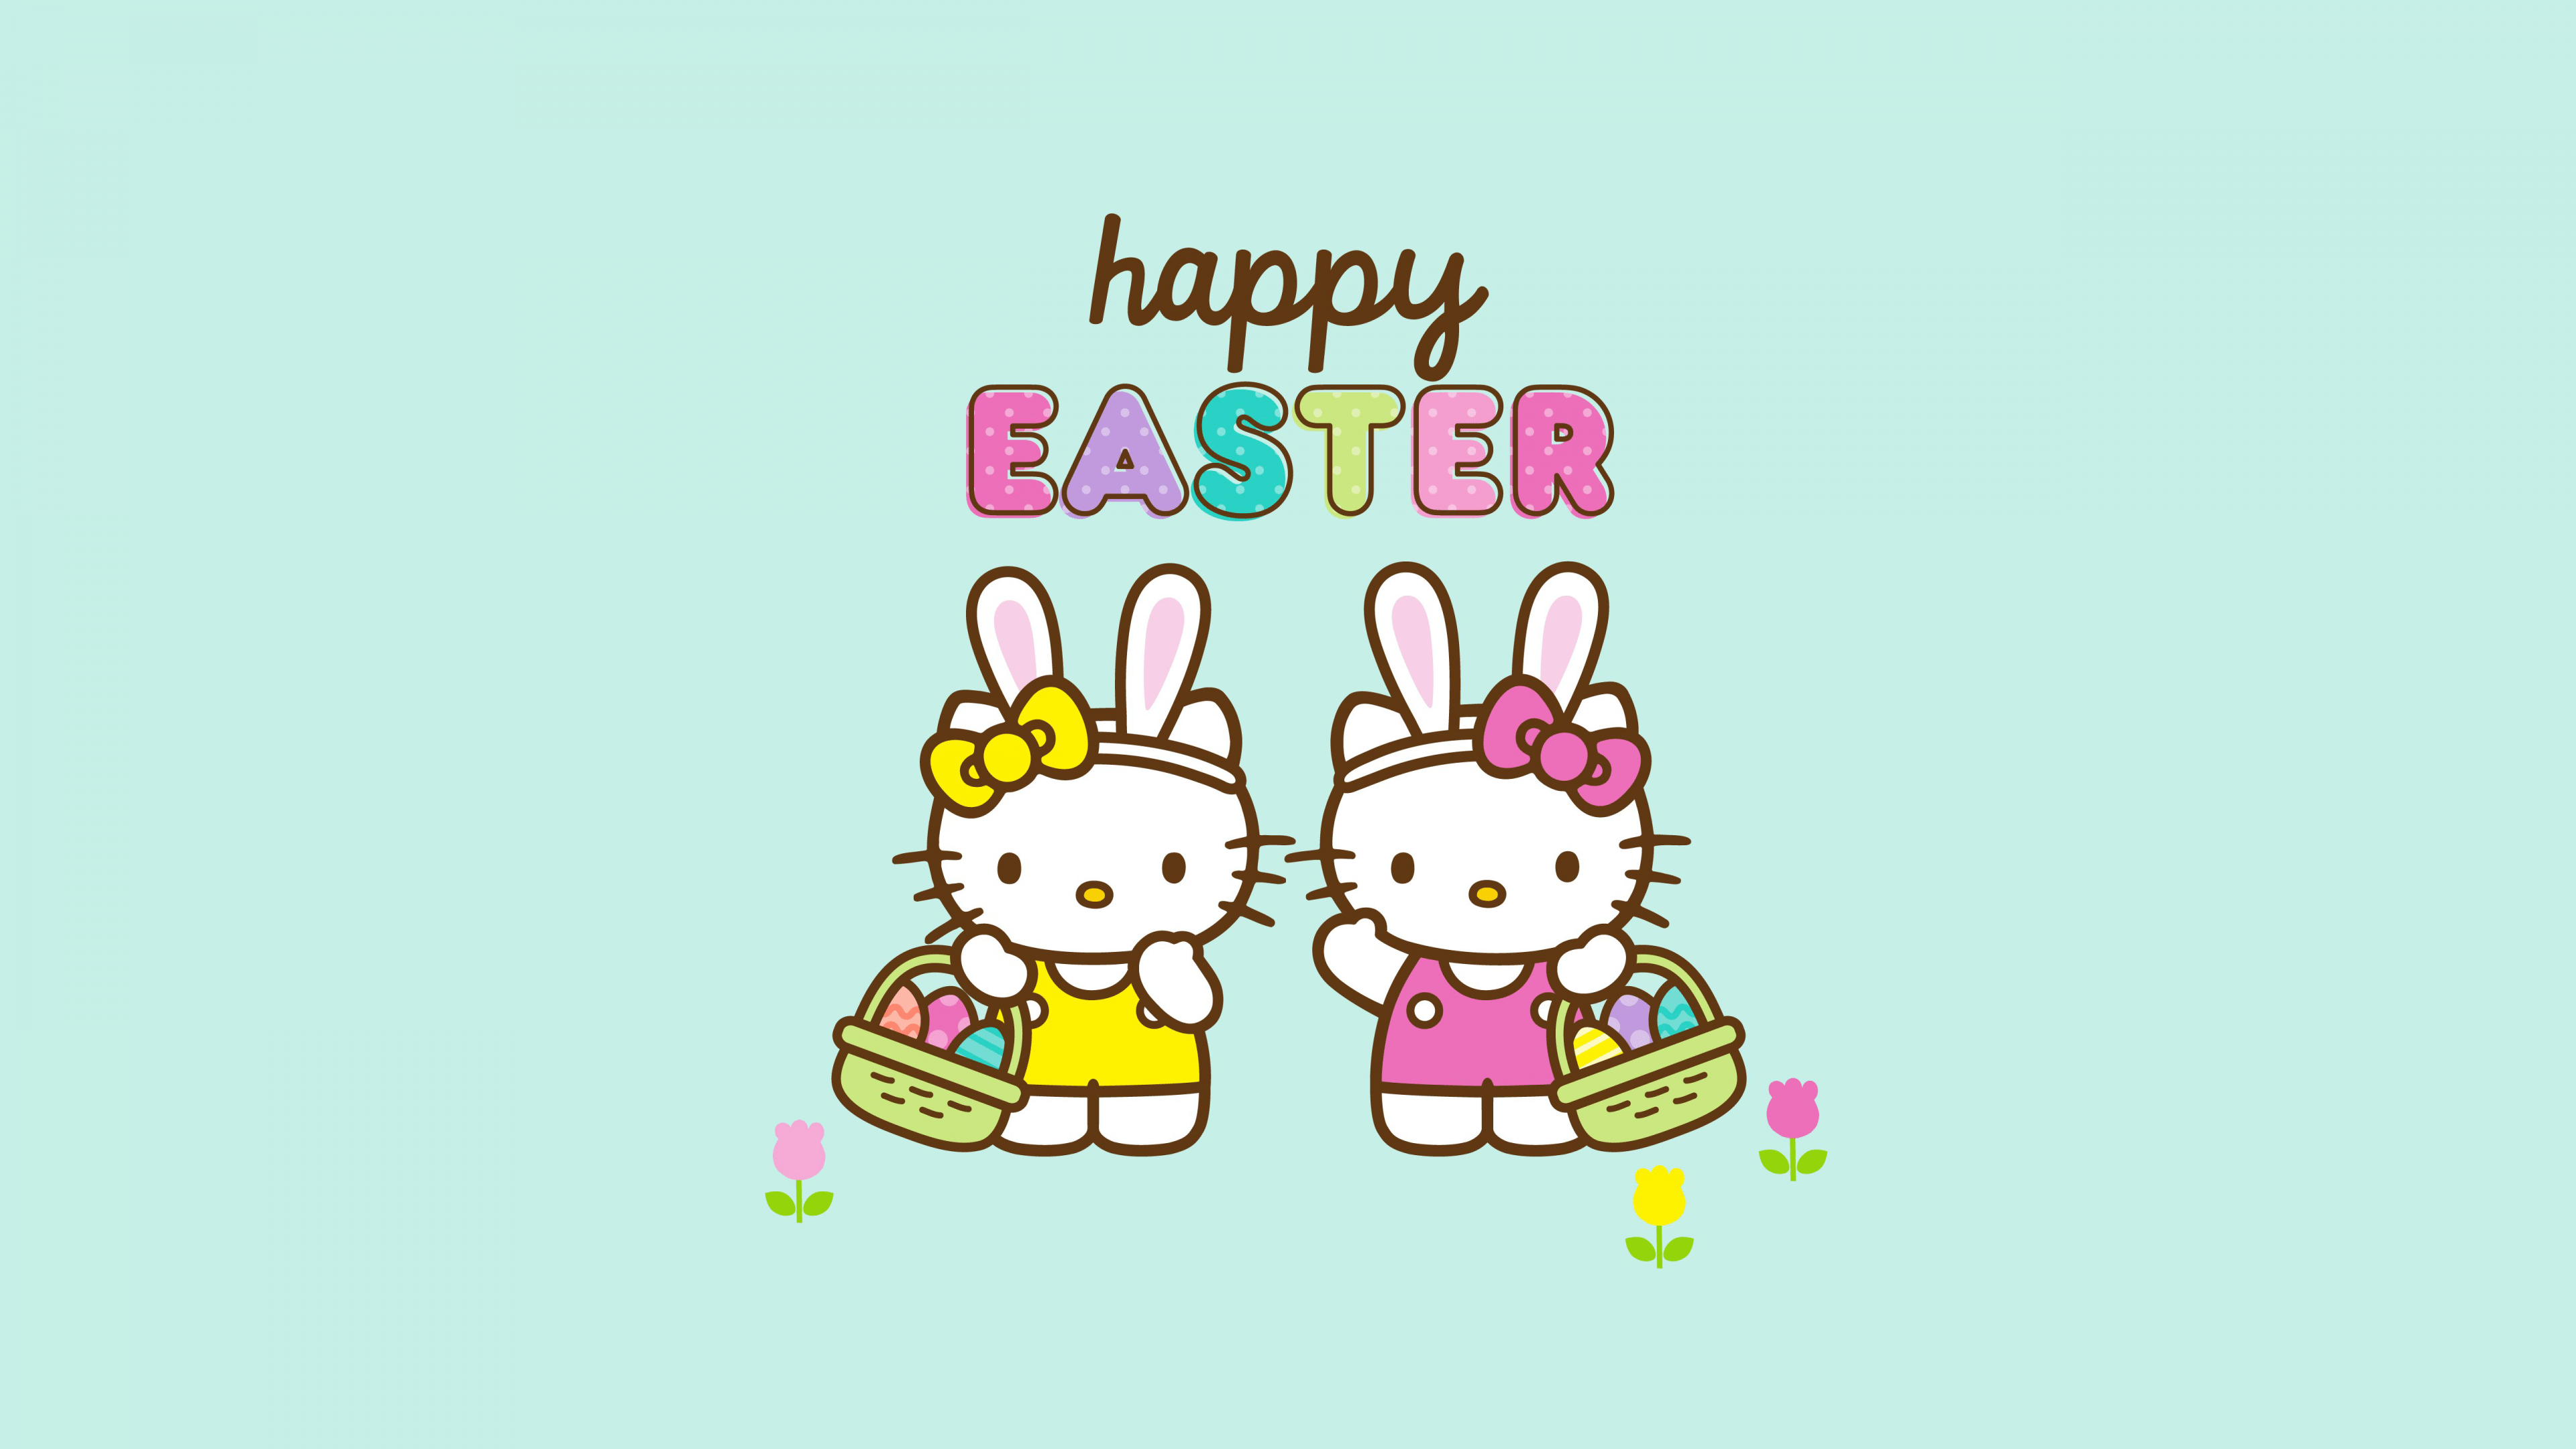 Happy Easter Wallpaper 4K, Cute hello kitties, Celebrations